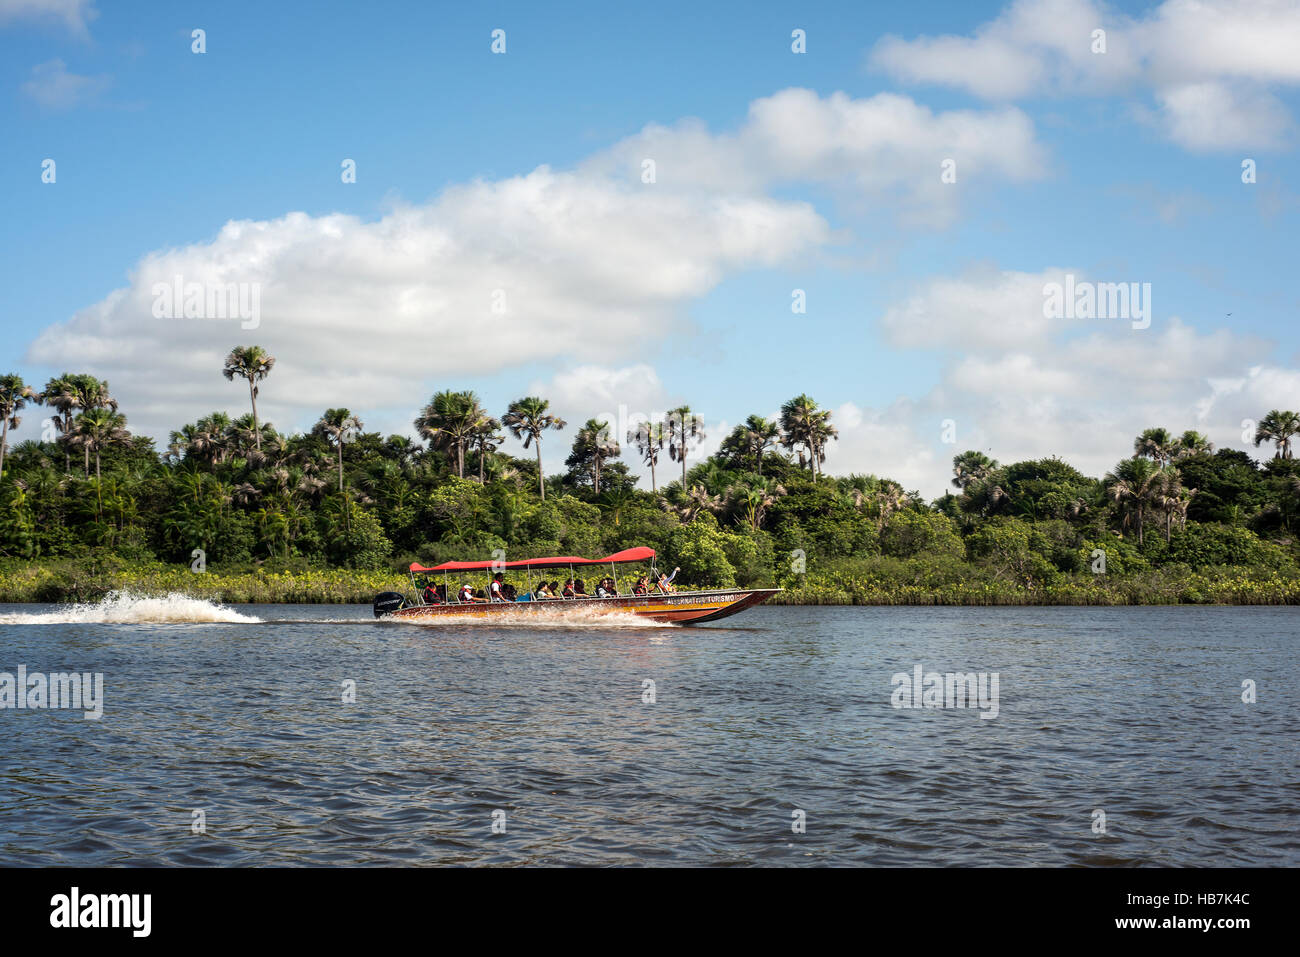 BARREIRINHAS, Brasile - 14 luglio 2016: i turisti hanno un viaggio sul fiume Rio Preguica, Maranhao, nel nord del Brasile nella foresta pluviale Foto Stock